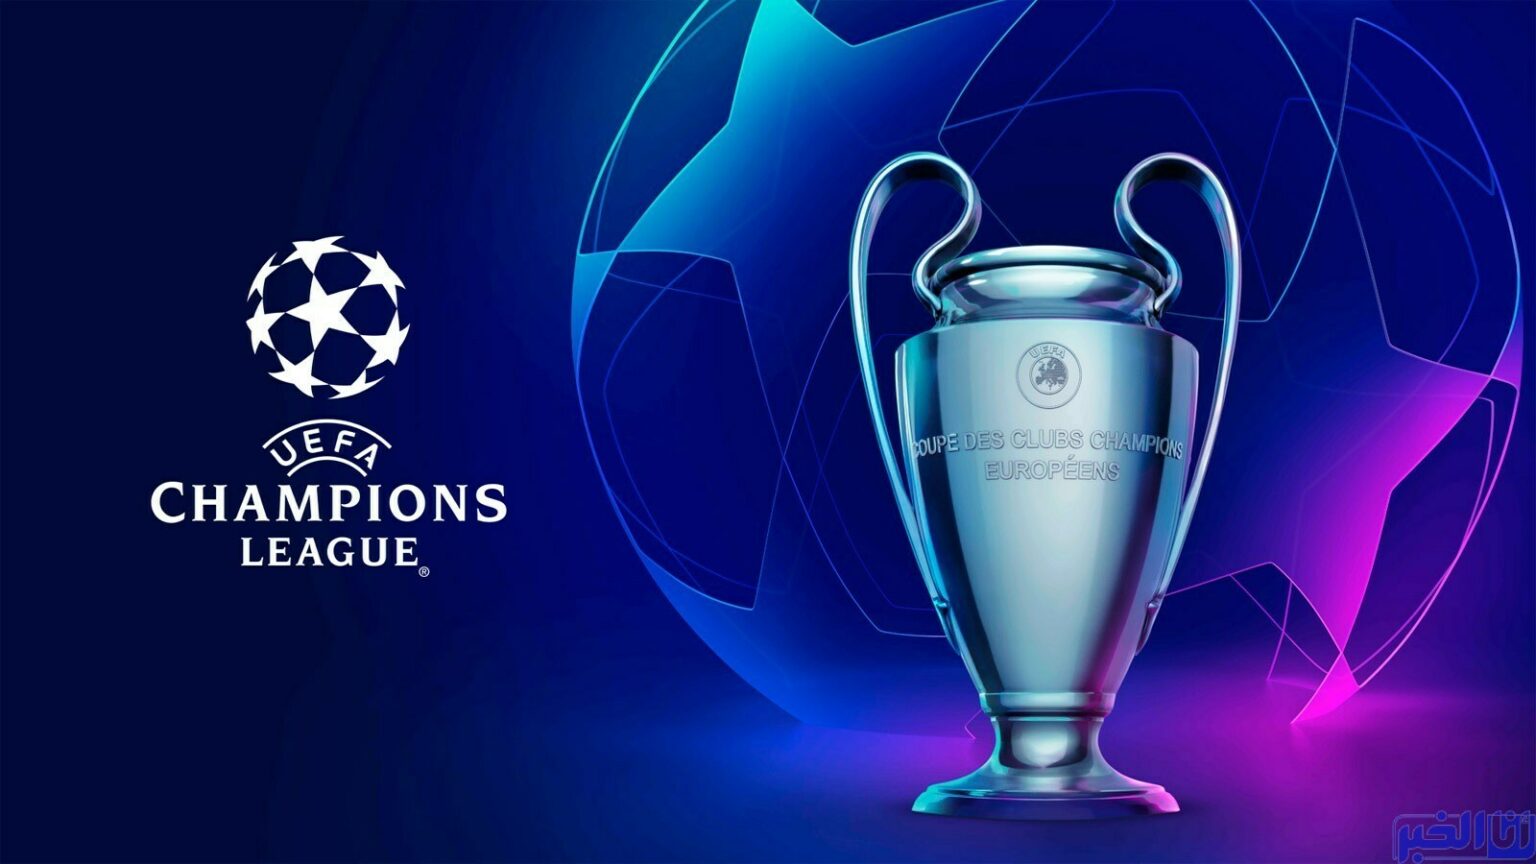 دوري أبطال أوروبا لكرة القدم: برنامج الجولة الثانية